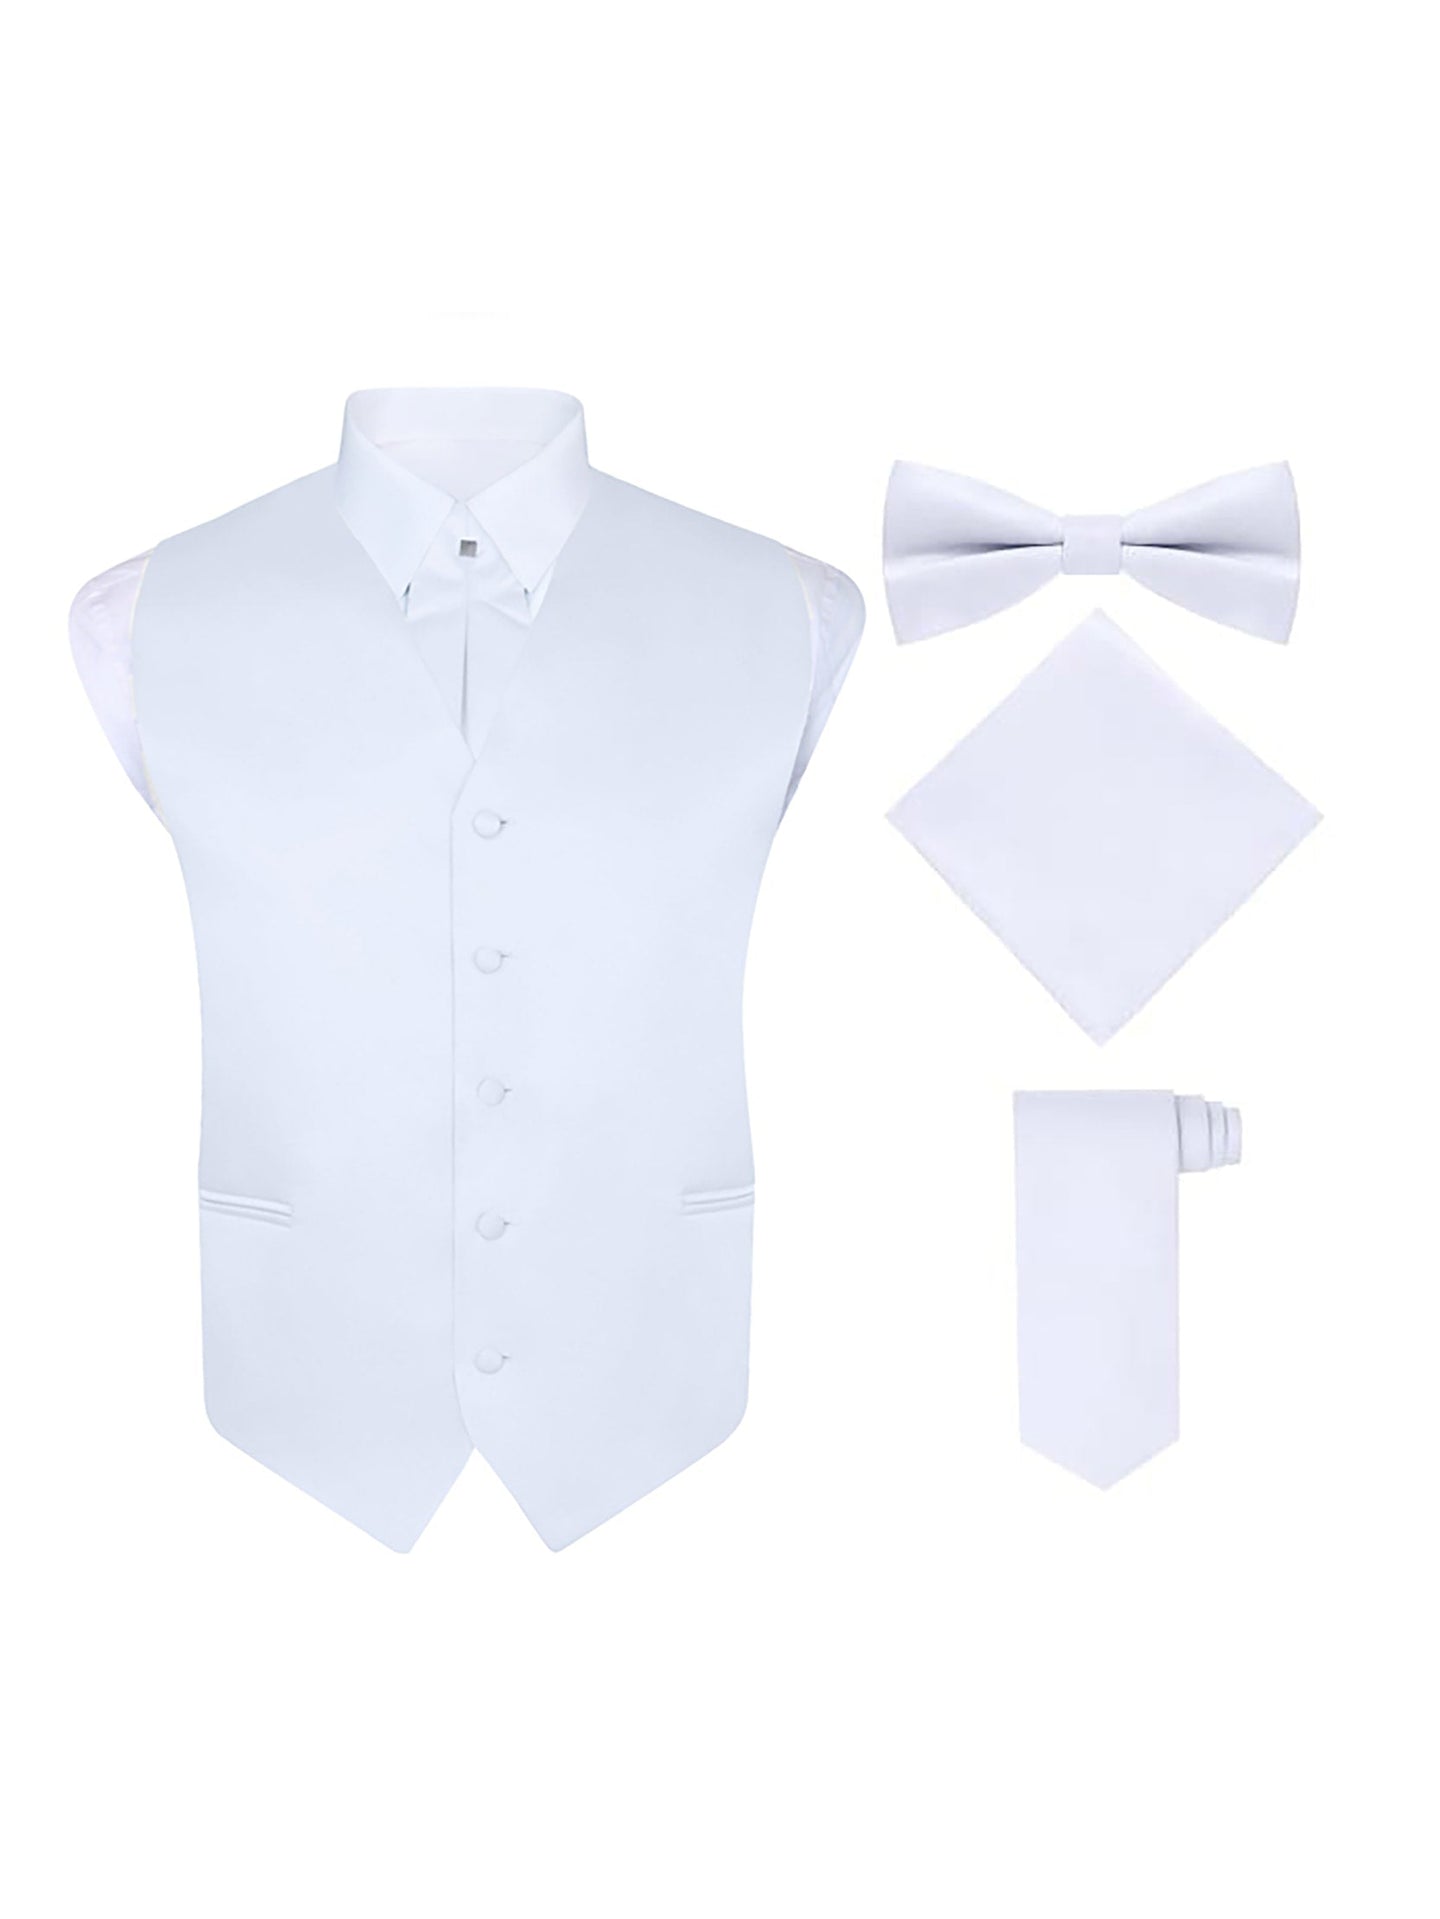 S.H. Churchill & Co. Men's 5 Piece Vest Set, with Cravat, Bow Tie, Neck Tie & Pocket Hanky-White